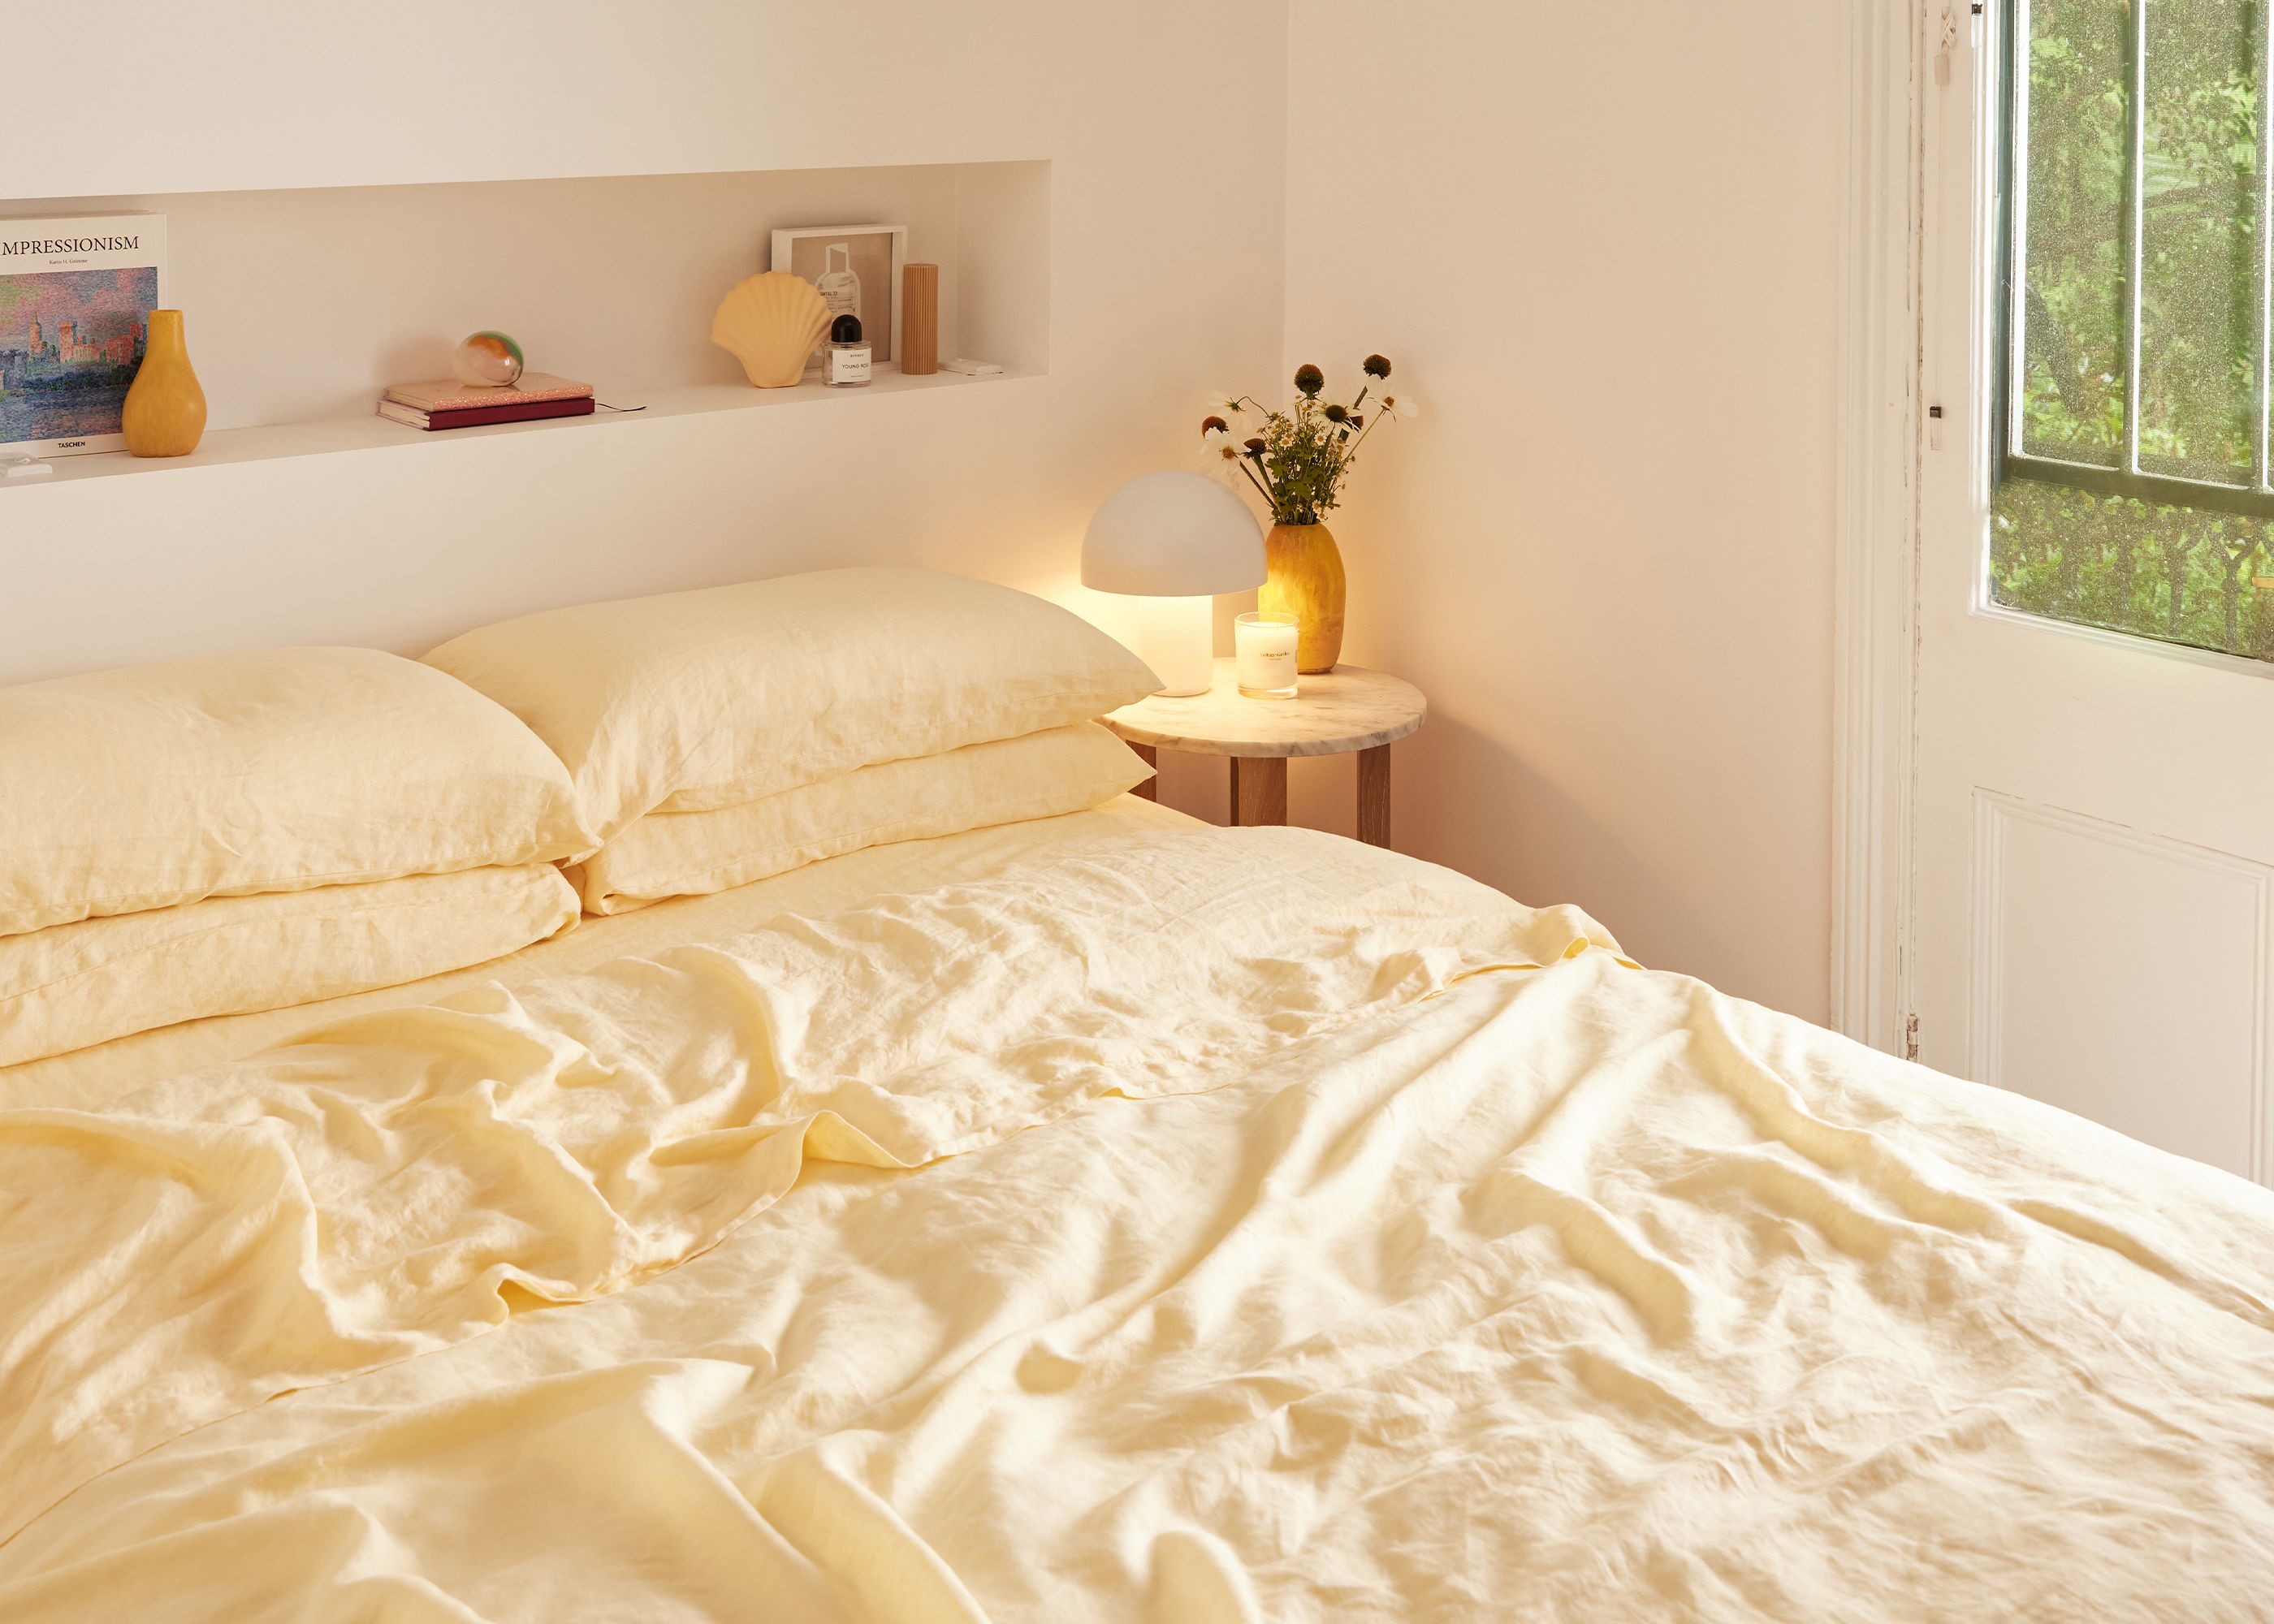 Limoncello linen bedding